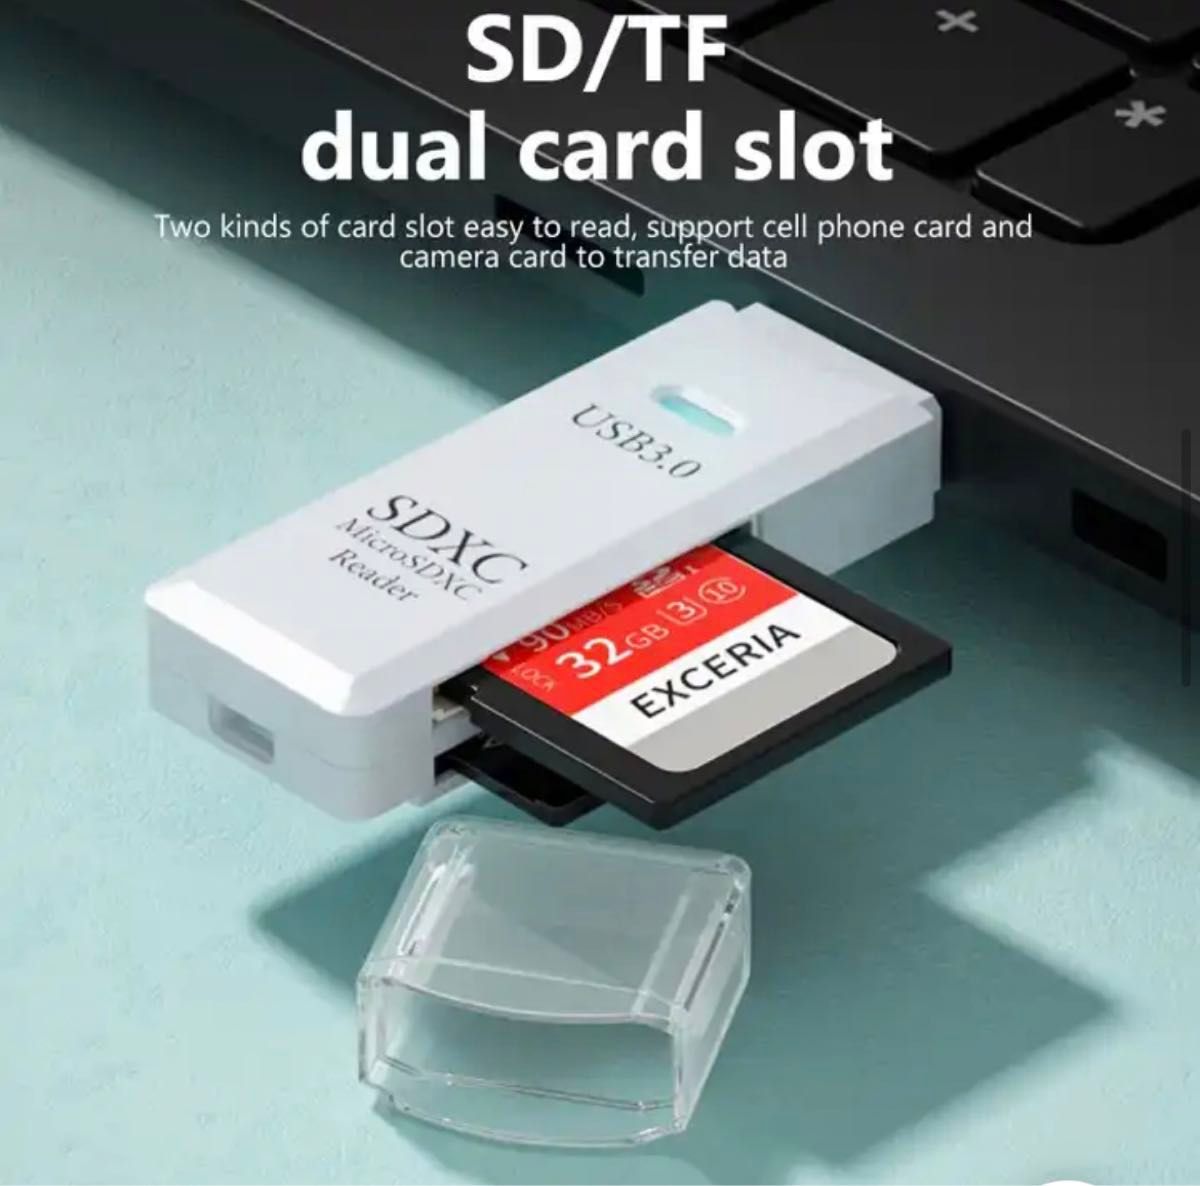 【新品】USB3.0 カードリーダー メモリ micro SD SDカード  黒